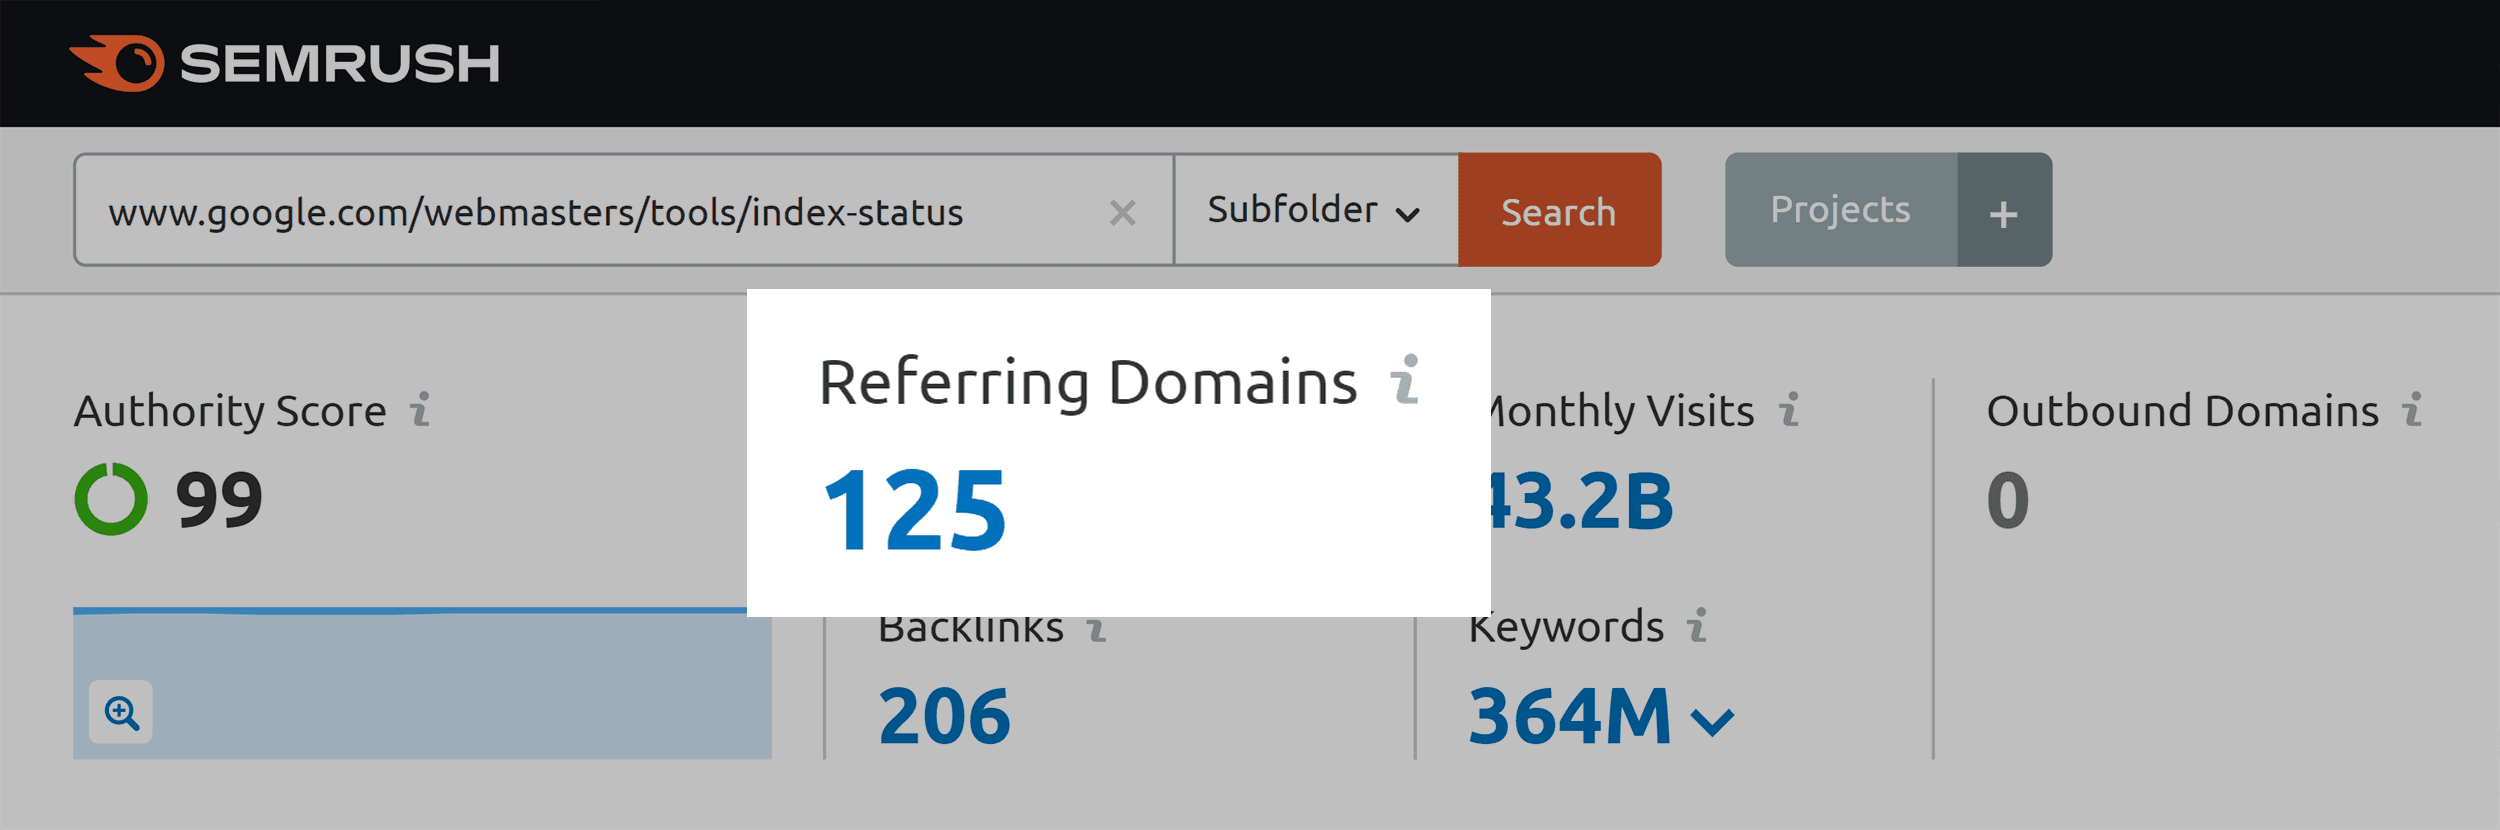 Index status – Referring domains